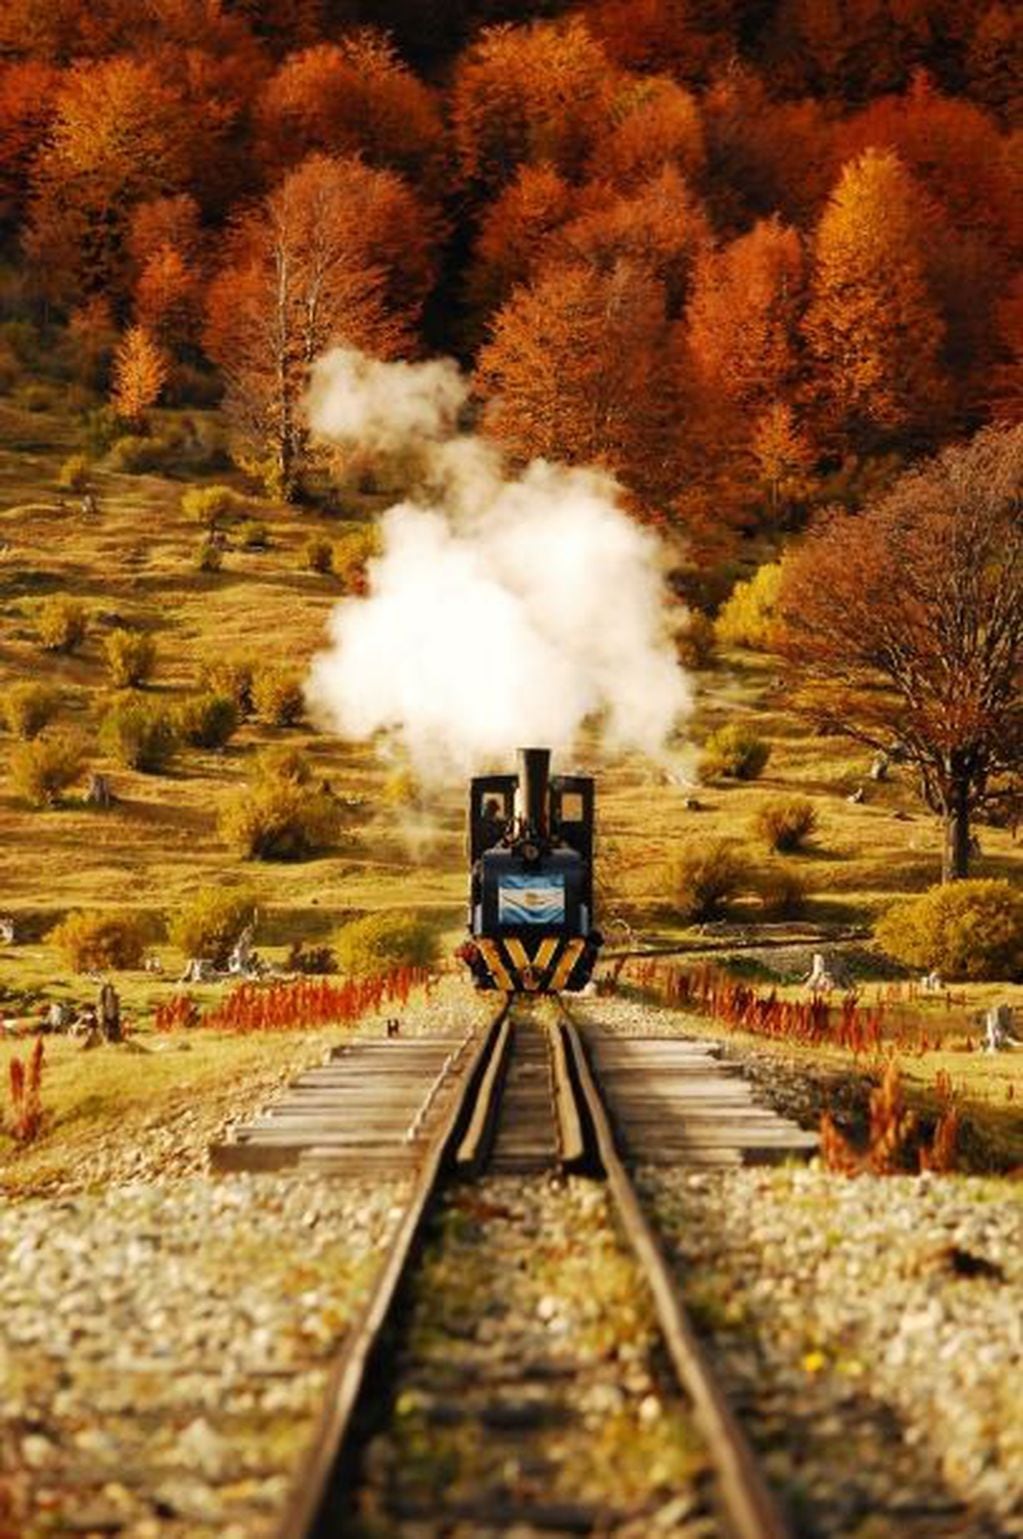 Foto ganadora segunda edición "Nuestra Argentina en Fotos". Tren del Fin del Mundo (Parque Nacional Tierra del Fuego). Créditos: Luca Armandi.